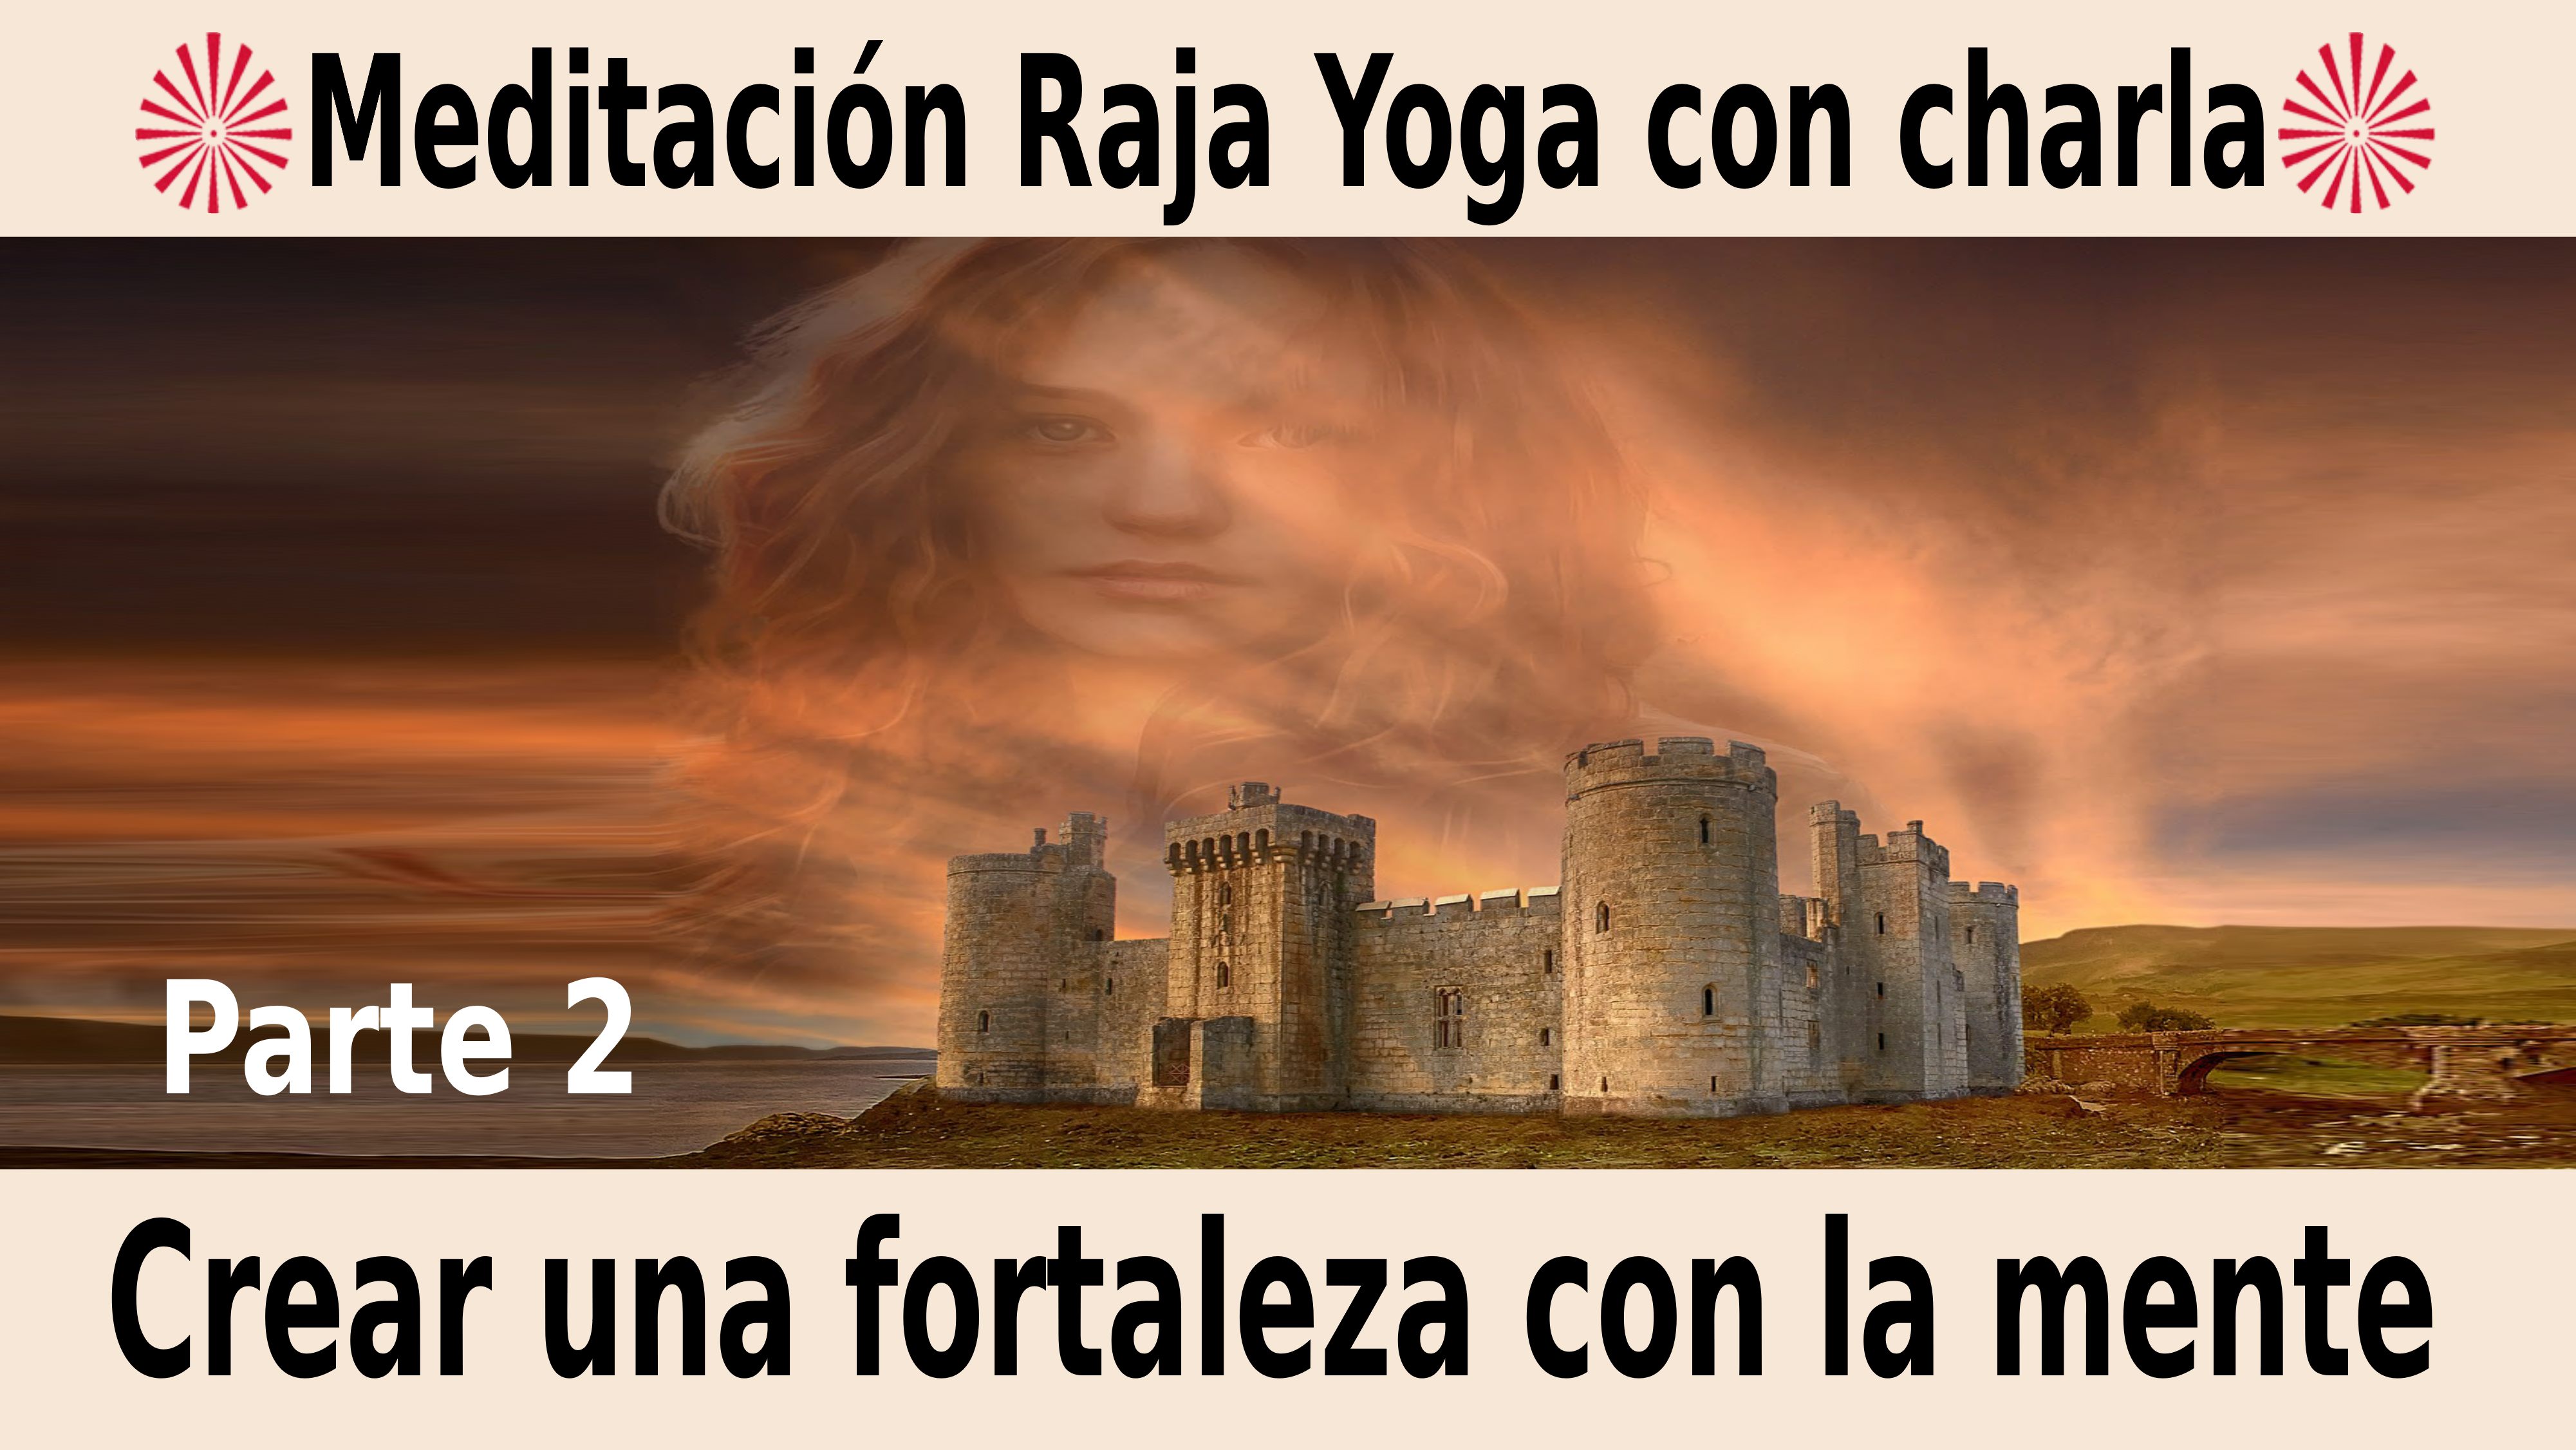 Meditación Raja Yoga con charla: Crear una fortaleza con la mente (2ª parte) (10 Noviembre 2020) On-line desde Madrid